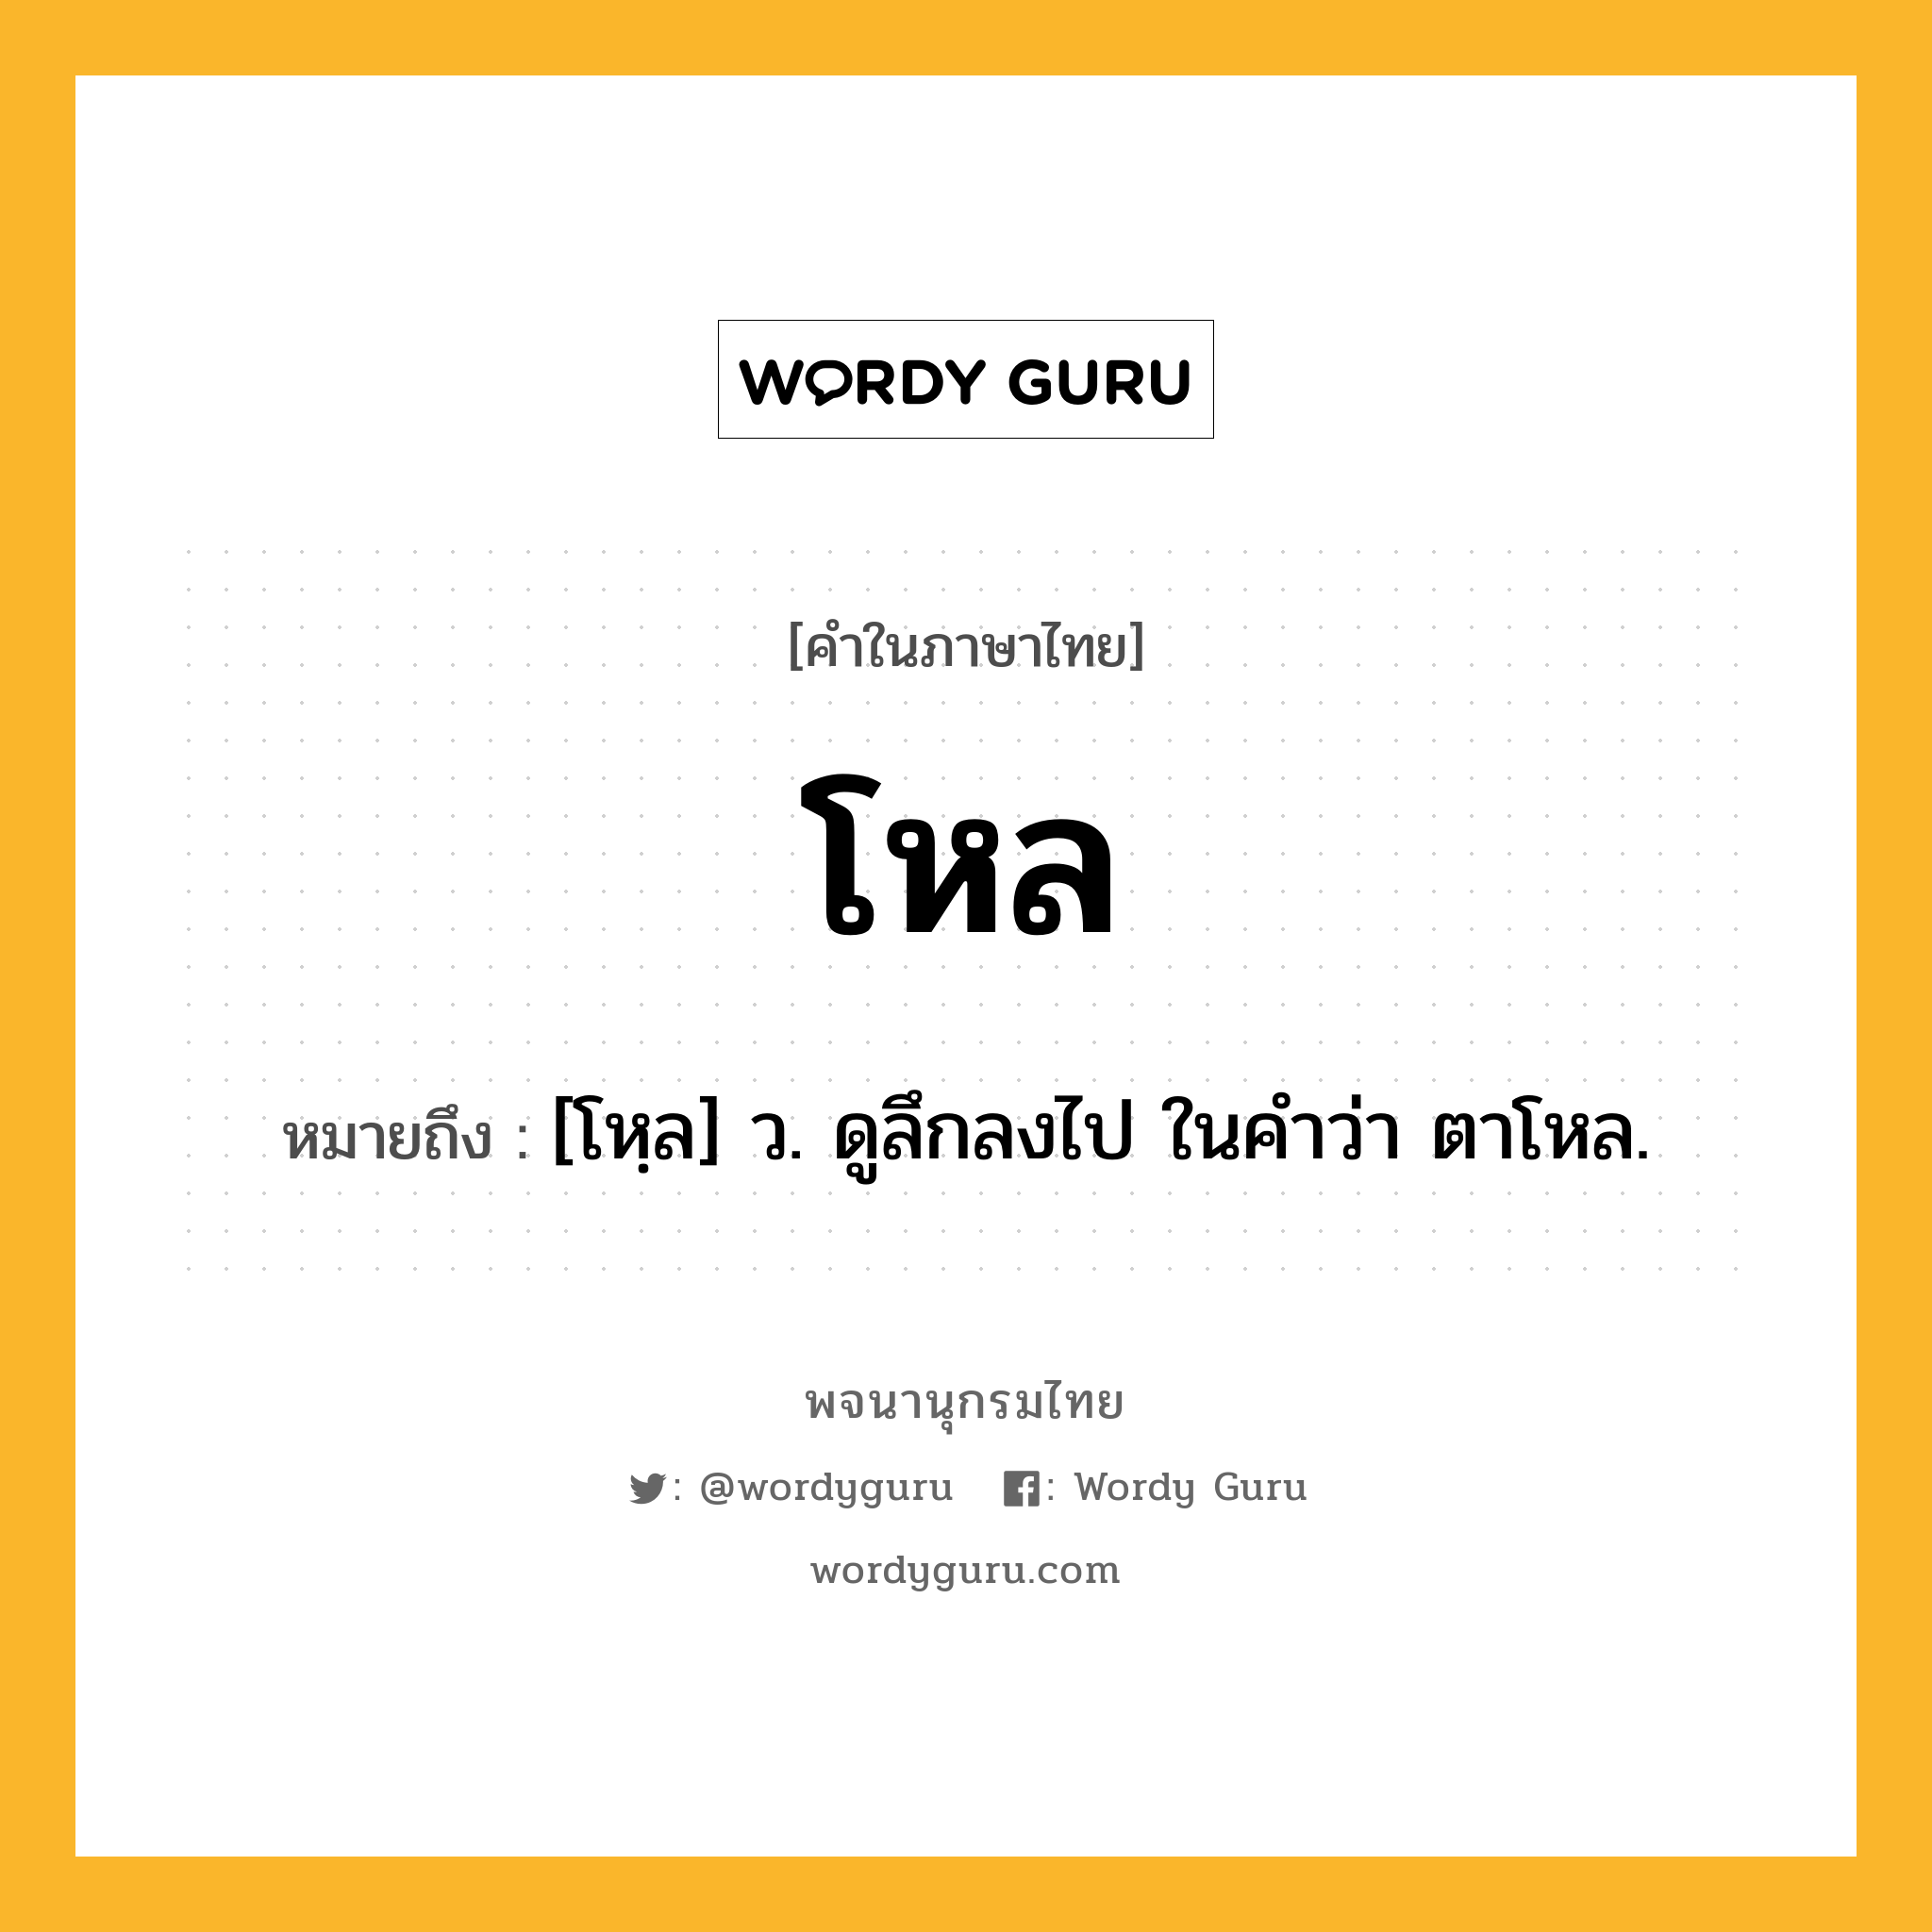 โหล หมายถึงอะไร?, คำในภาษาไทย โหล หมายถึง [โหฺล] ว. ดูลึกลงไป ในคําว่า ตาโหล.